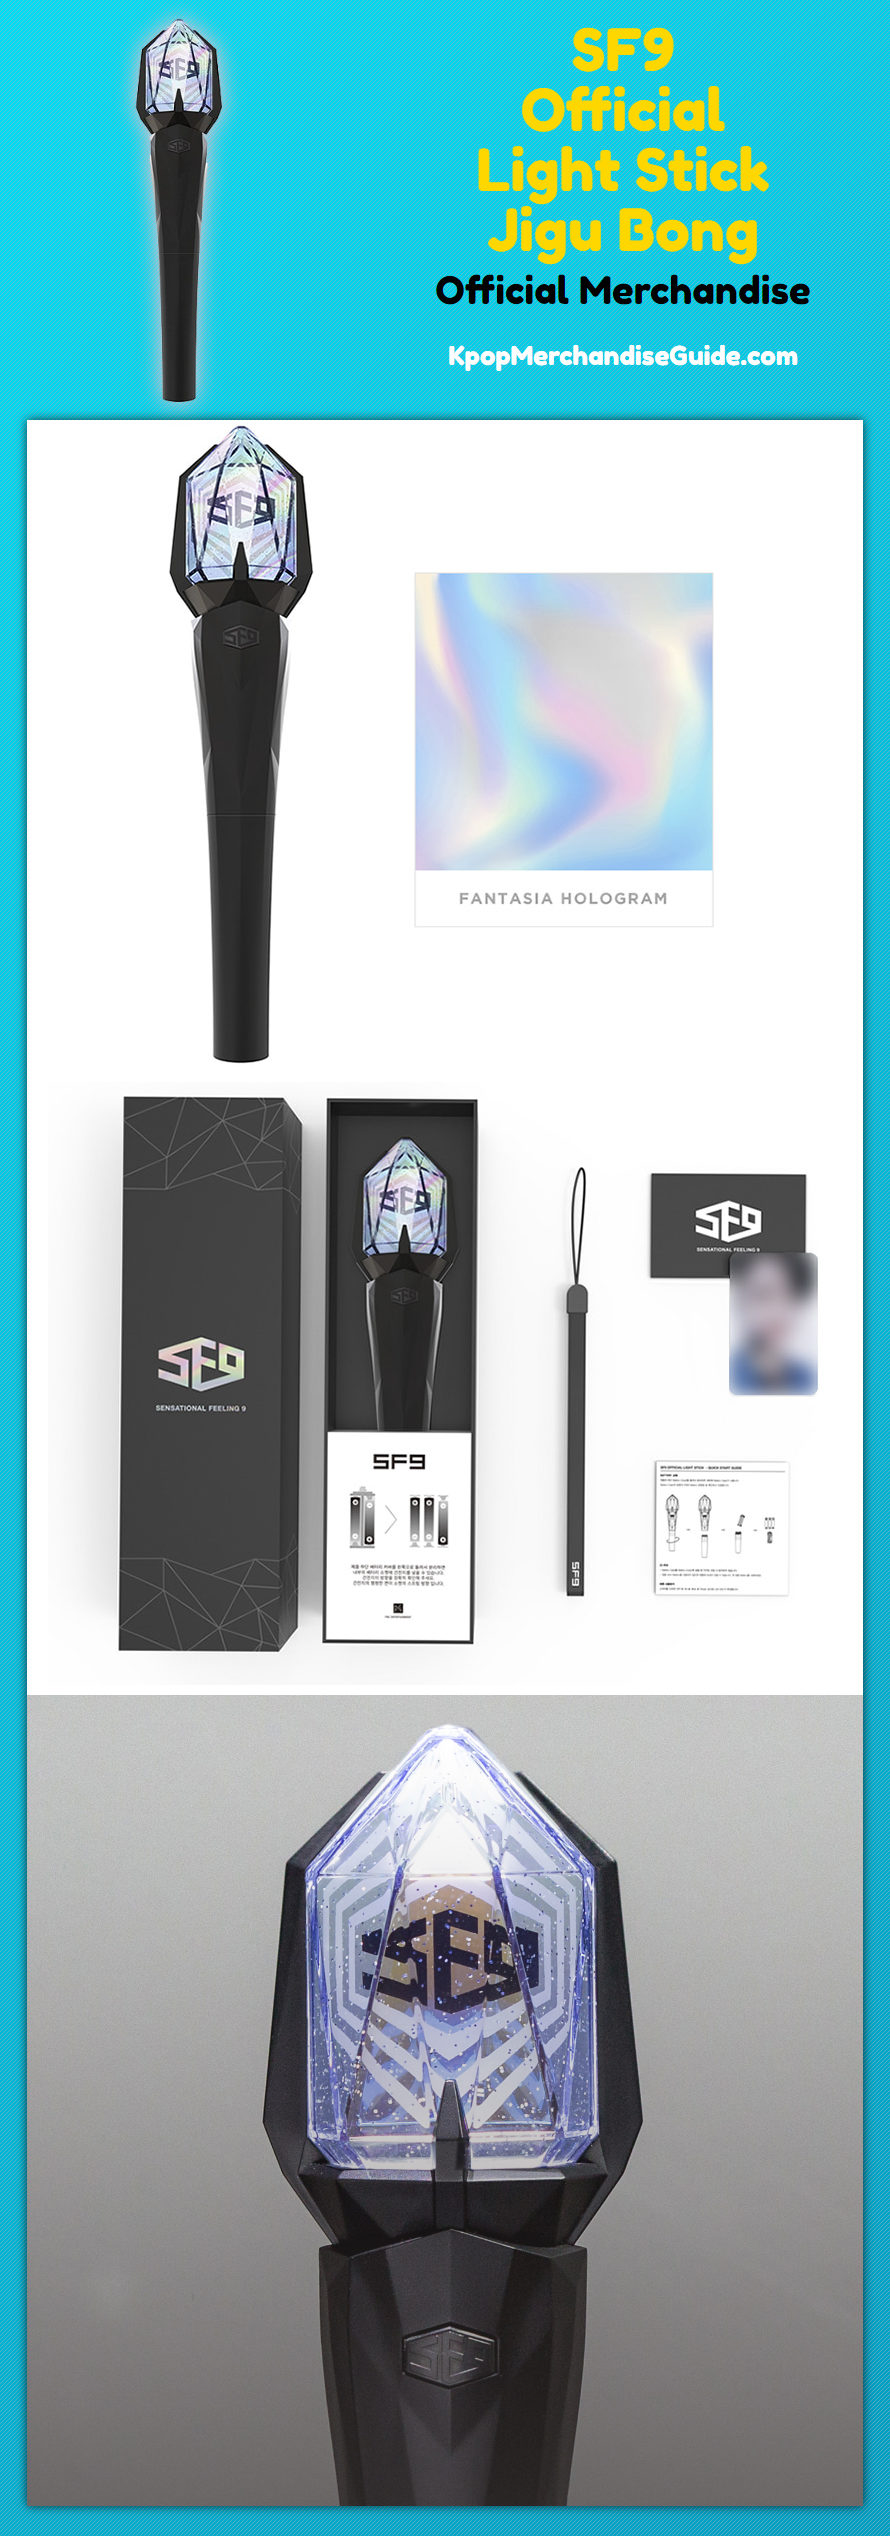 SF9 Official Light Stick Jigu Bong